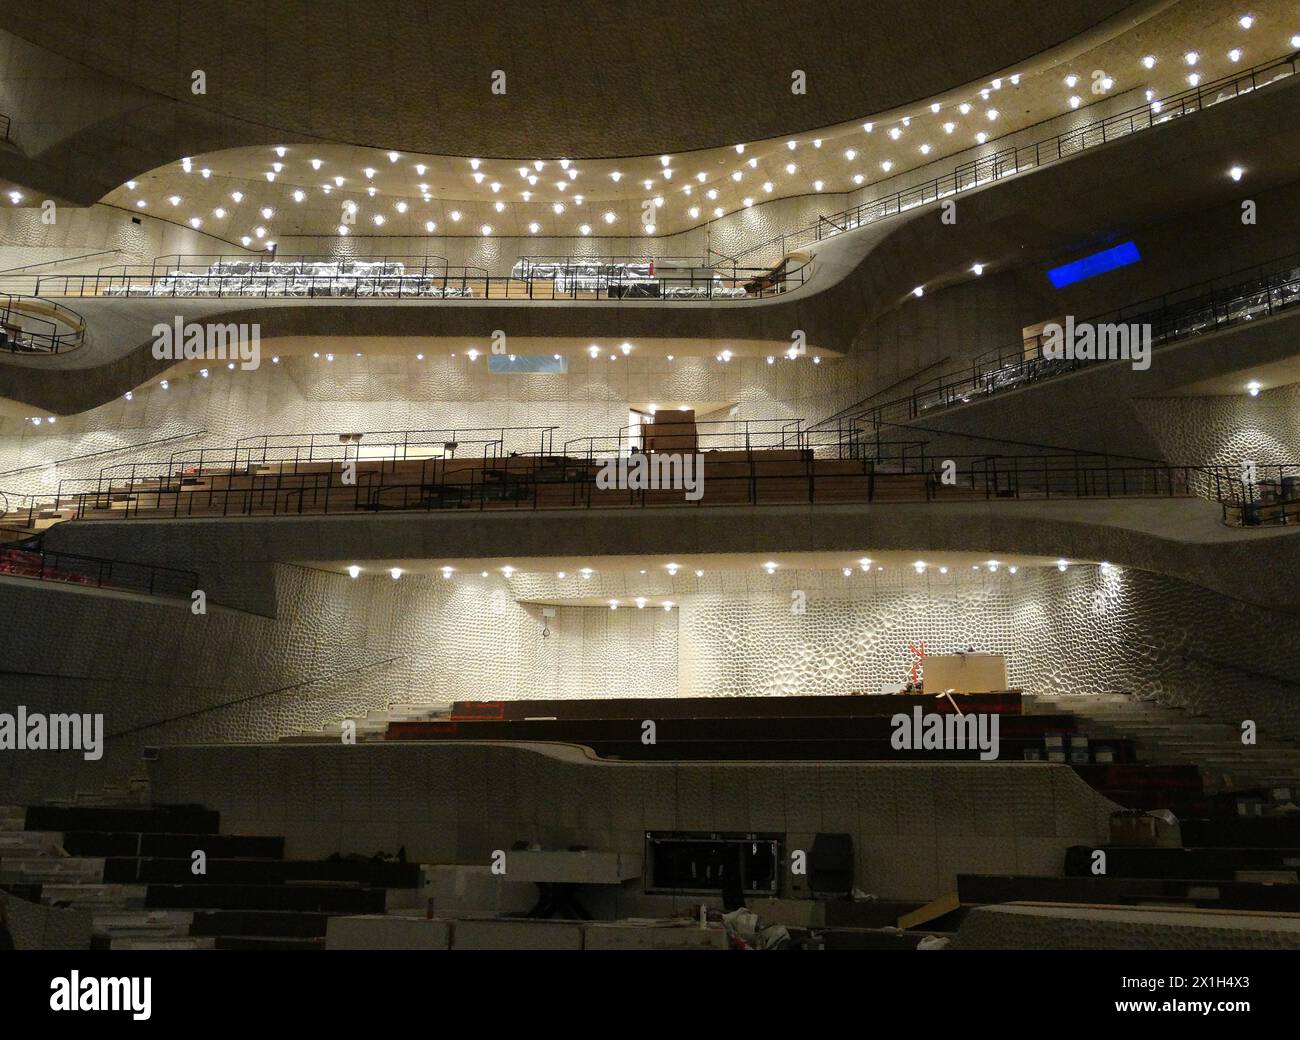 Elbphilharmonie, Konzertsaal im Hamburger HafenCity-Viertel, am 11. April 2016. ABBILDUNG: Elbphilharmonie - 20160410 PD11883 - Rechteinfo: Rights Managed (RM) Stockfoto